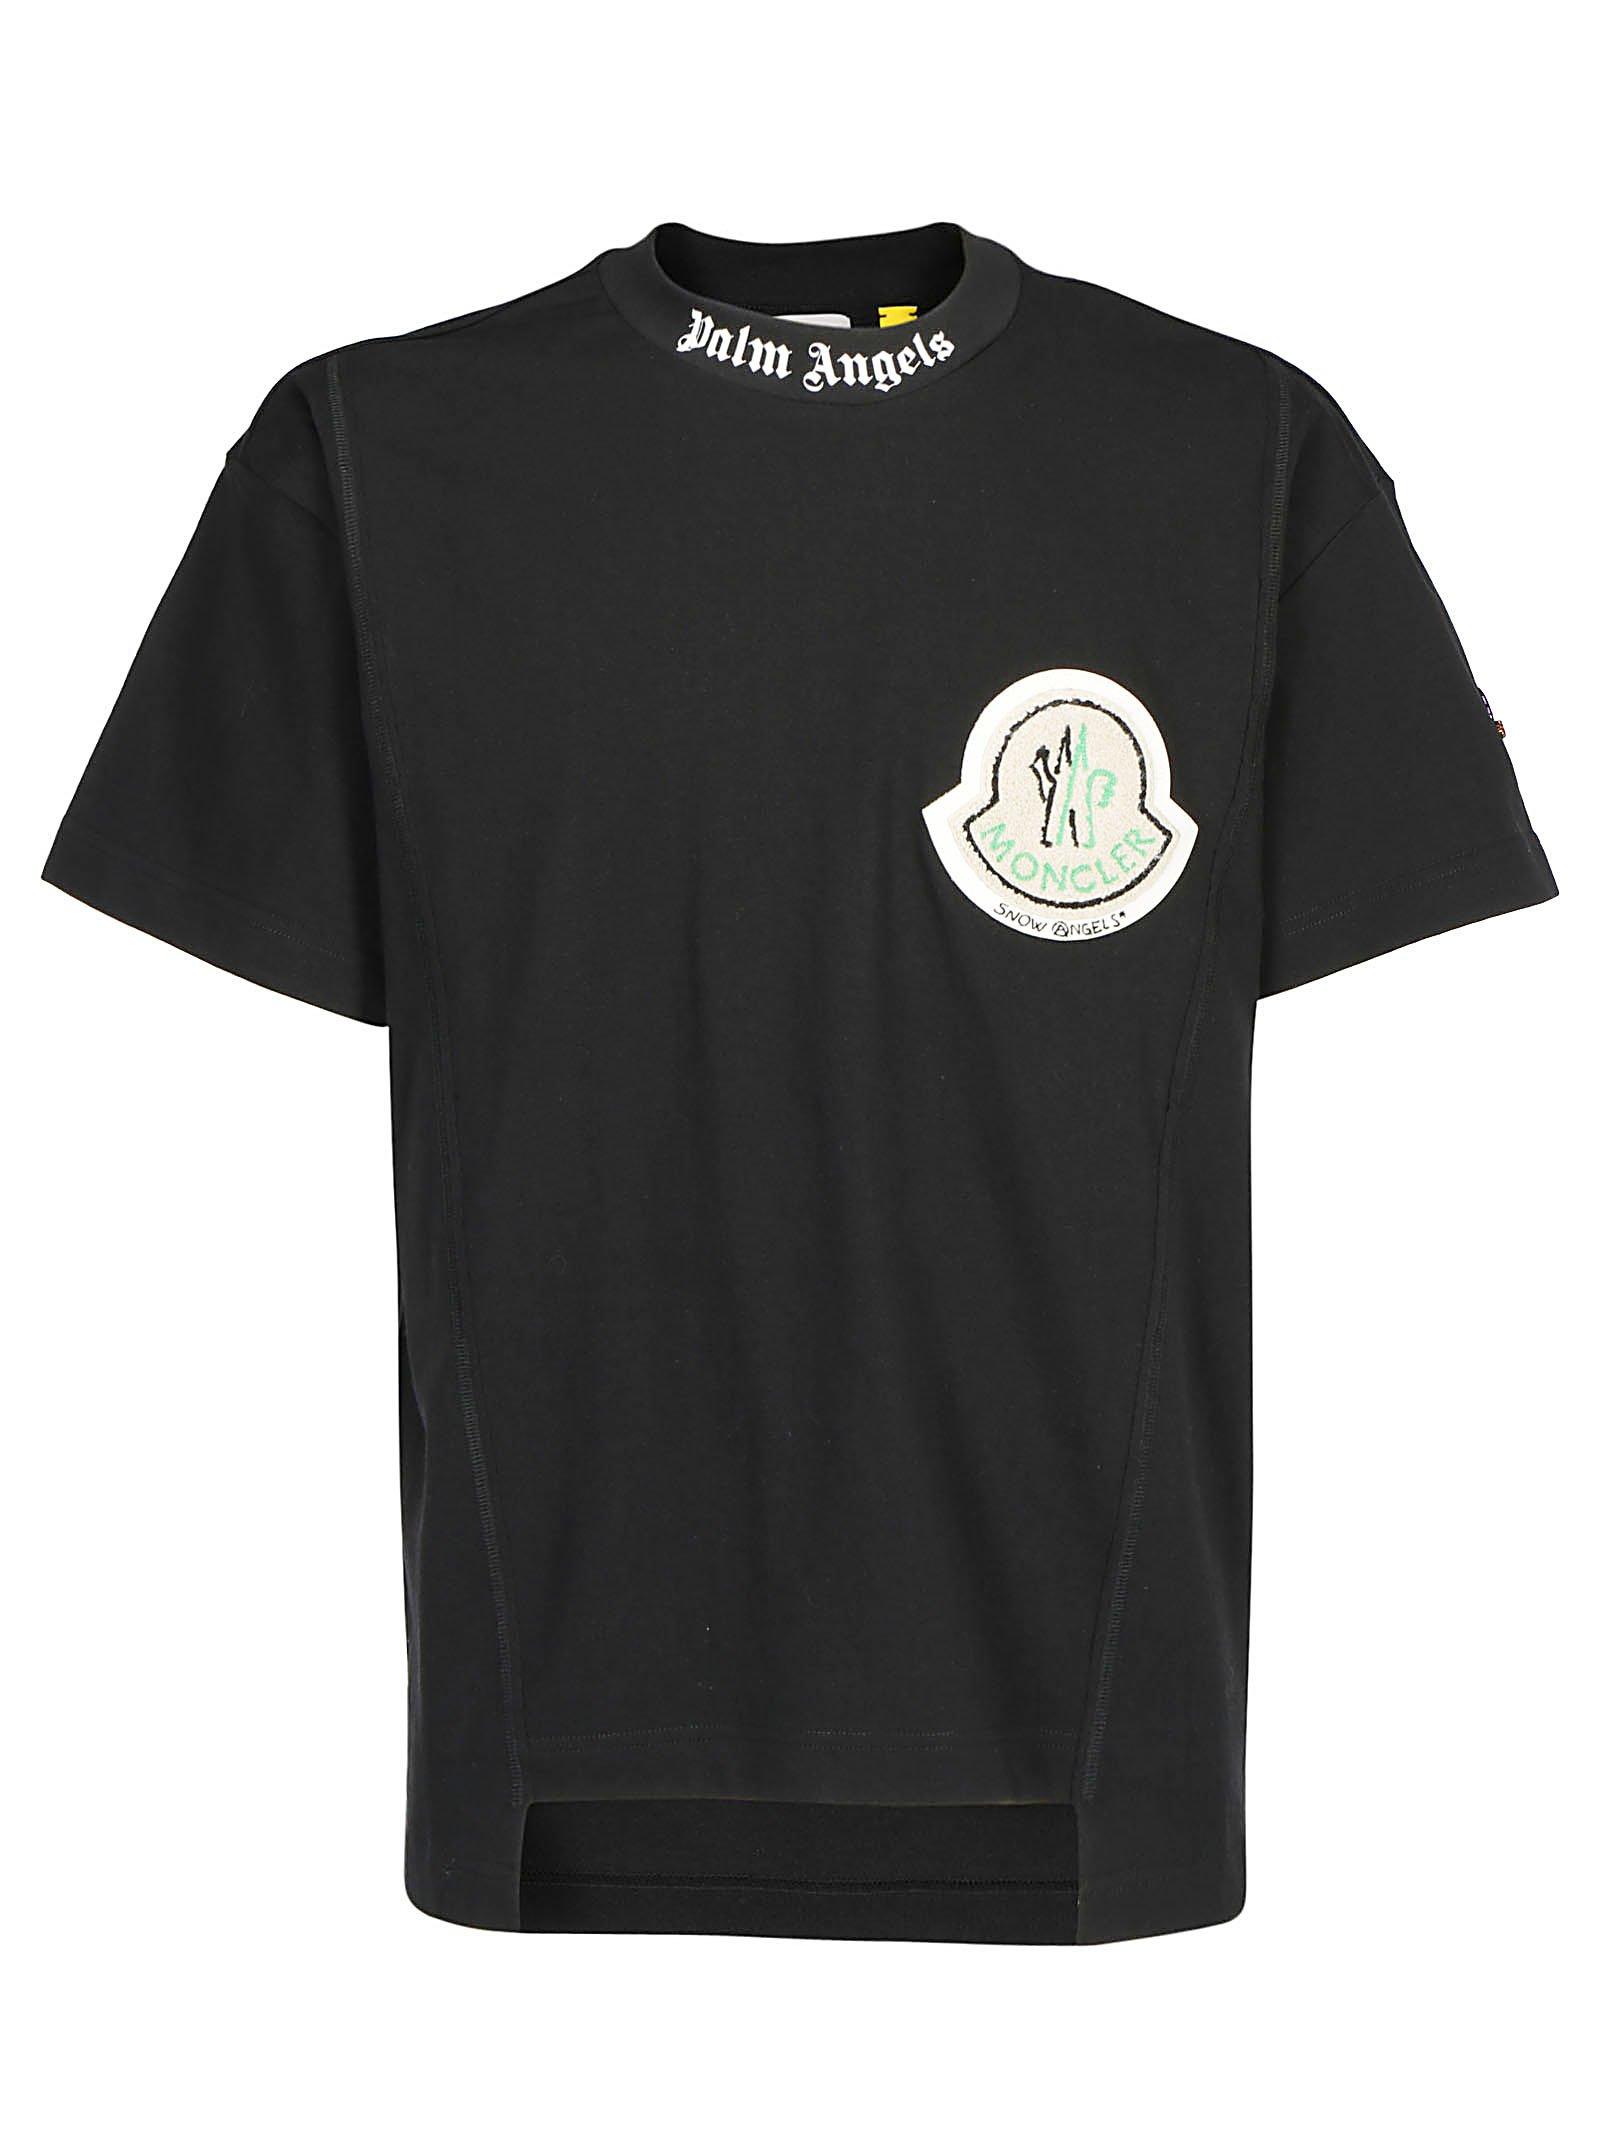 Moncler Genius 8 Moncler Palm Angels Black Cotton T-shirt for Men 